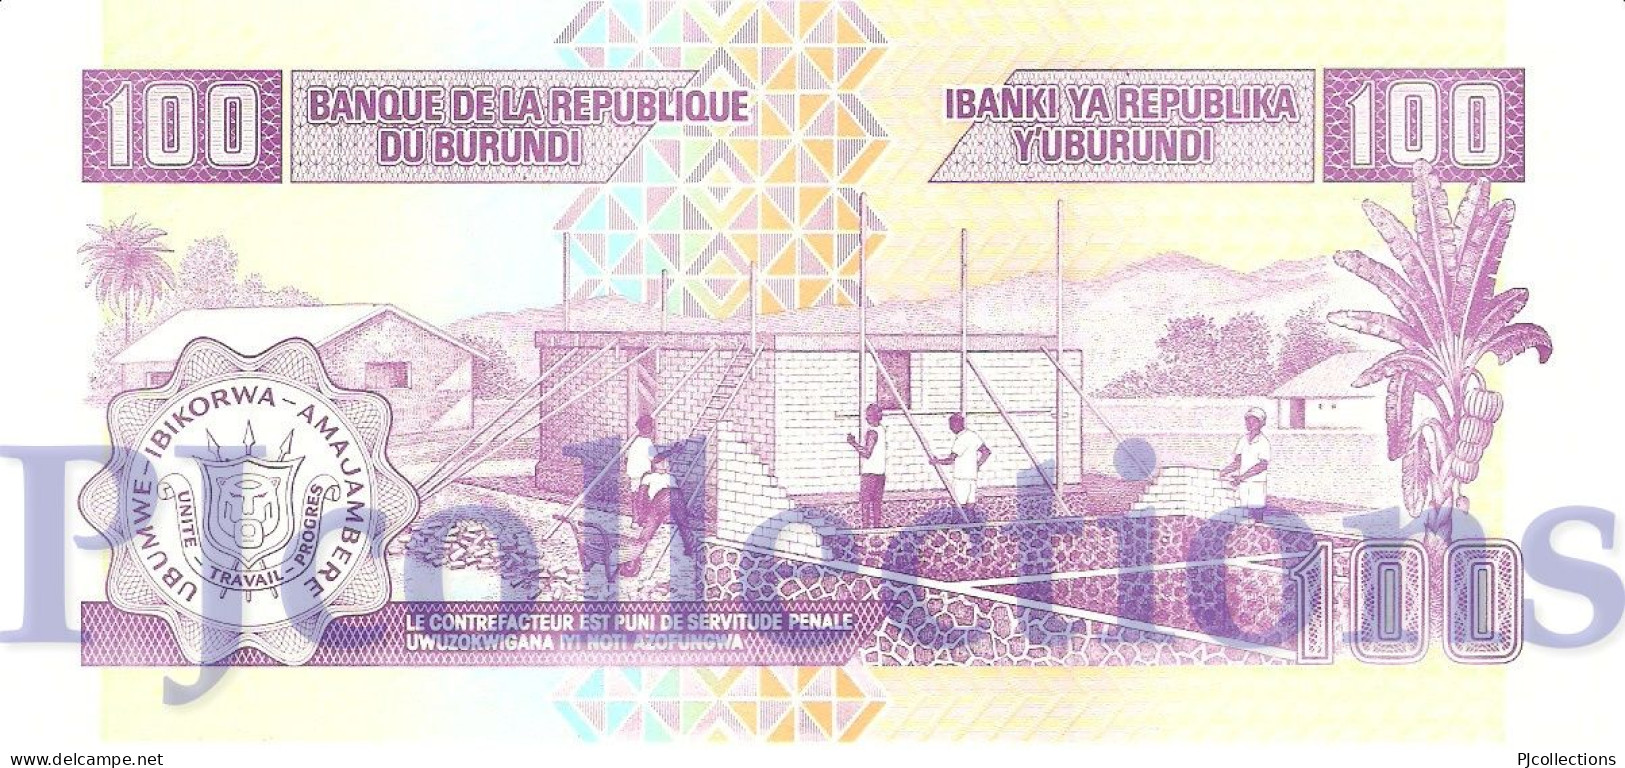 BURUNDI 100 FRANCS 2007 PICK 37f UNC - Burundi